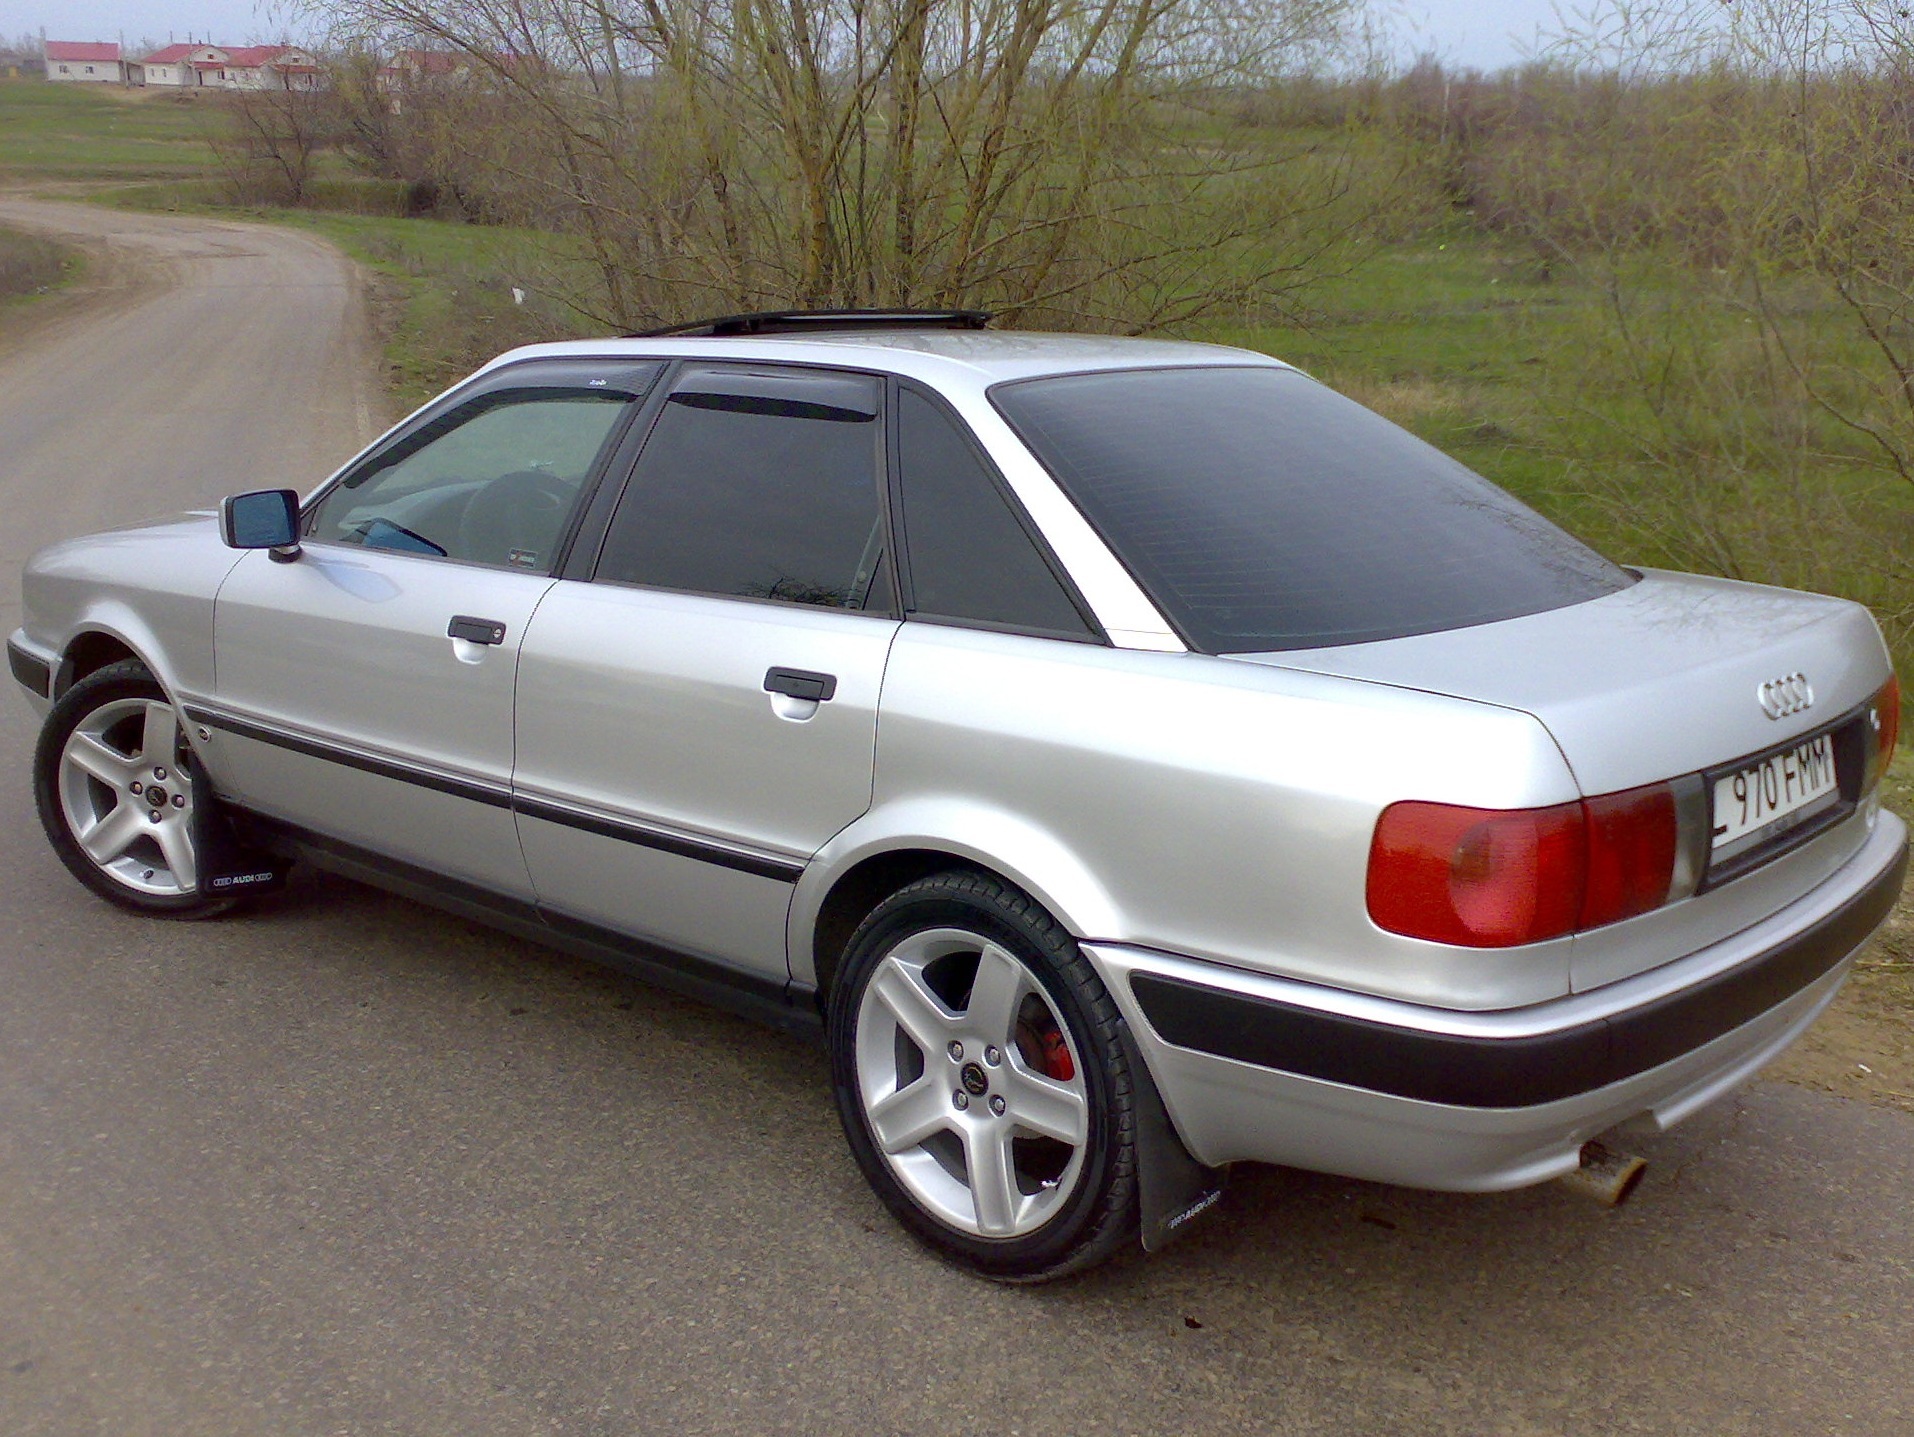 Купить ауди б4 в белоруссии. Ауди 80 б4. Audi 80 b4 1996. Audi 80 b4 4.2. Ауди 80 б4 2.0.